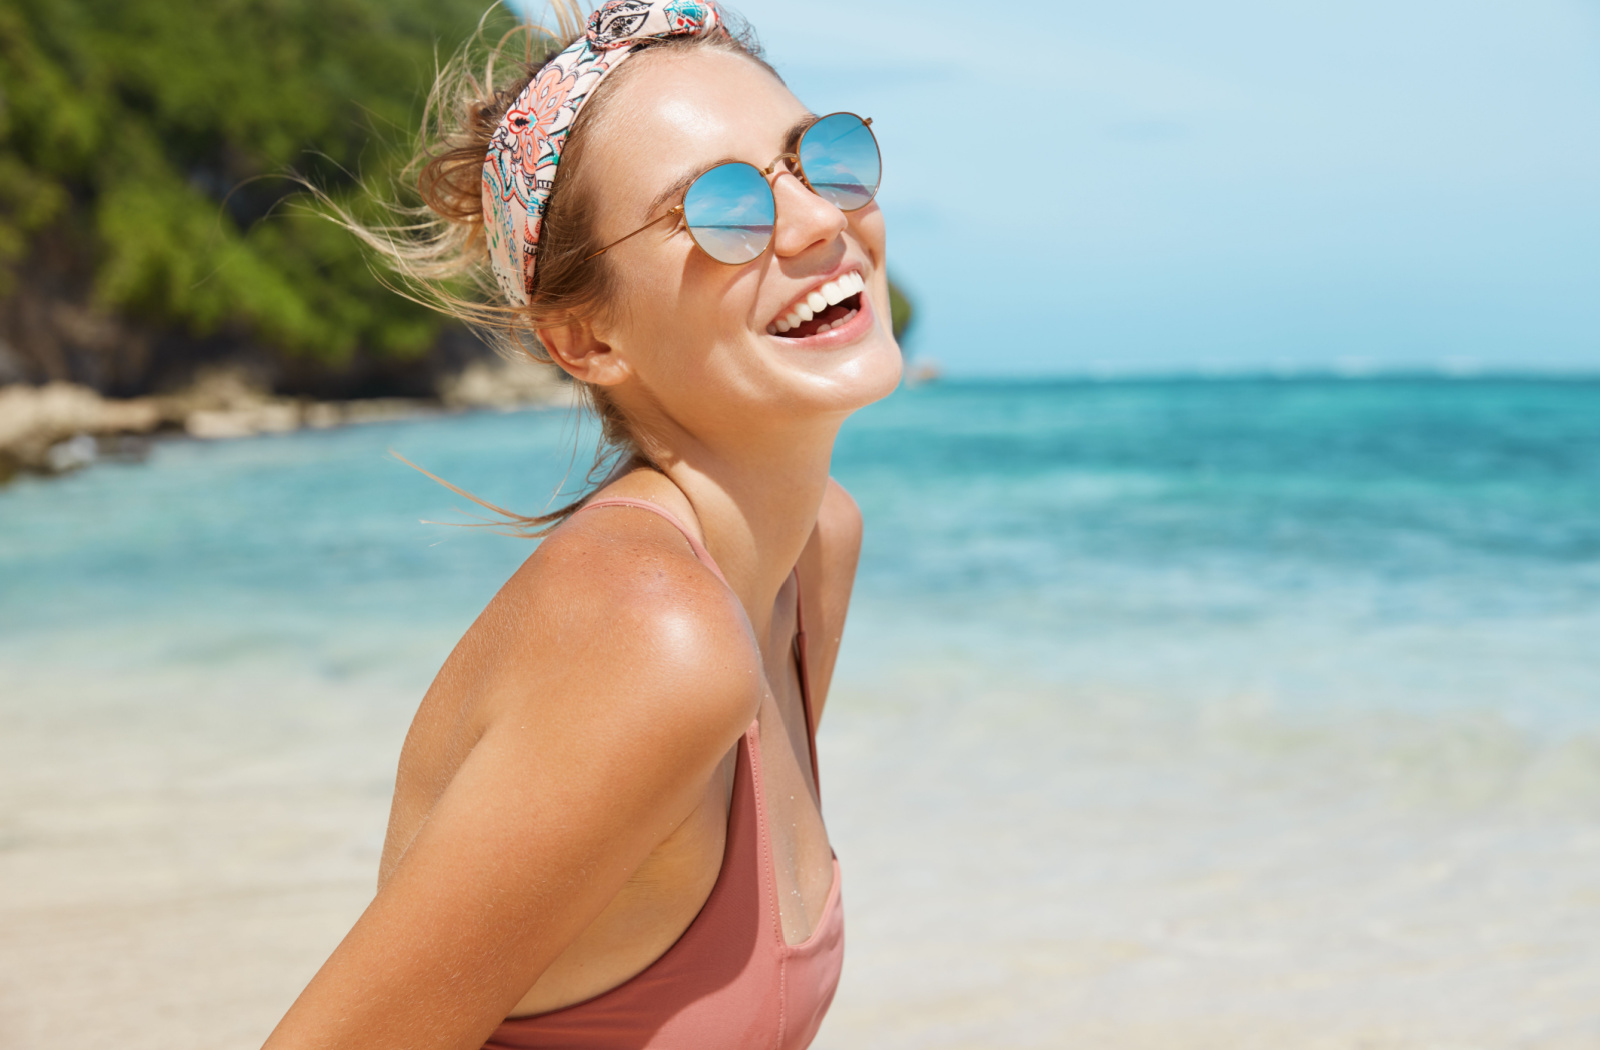 UV Protection Sunglasses & Sun Damage to Eyes